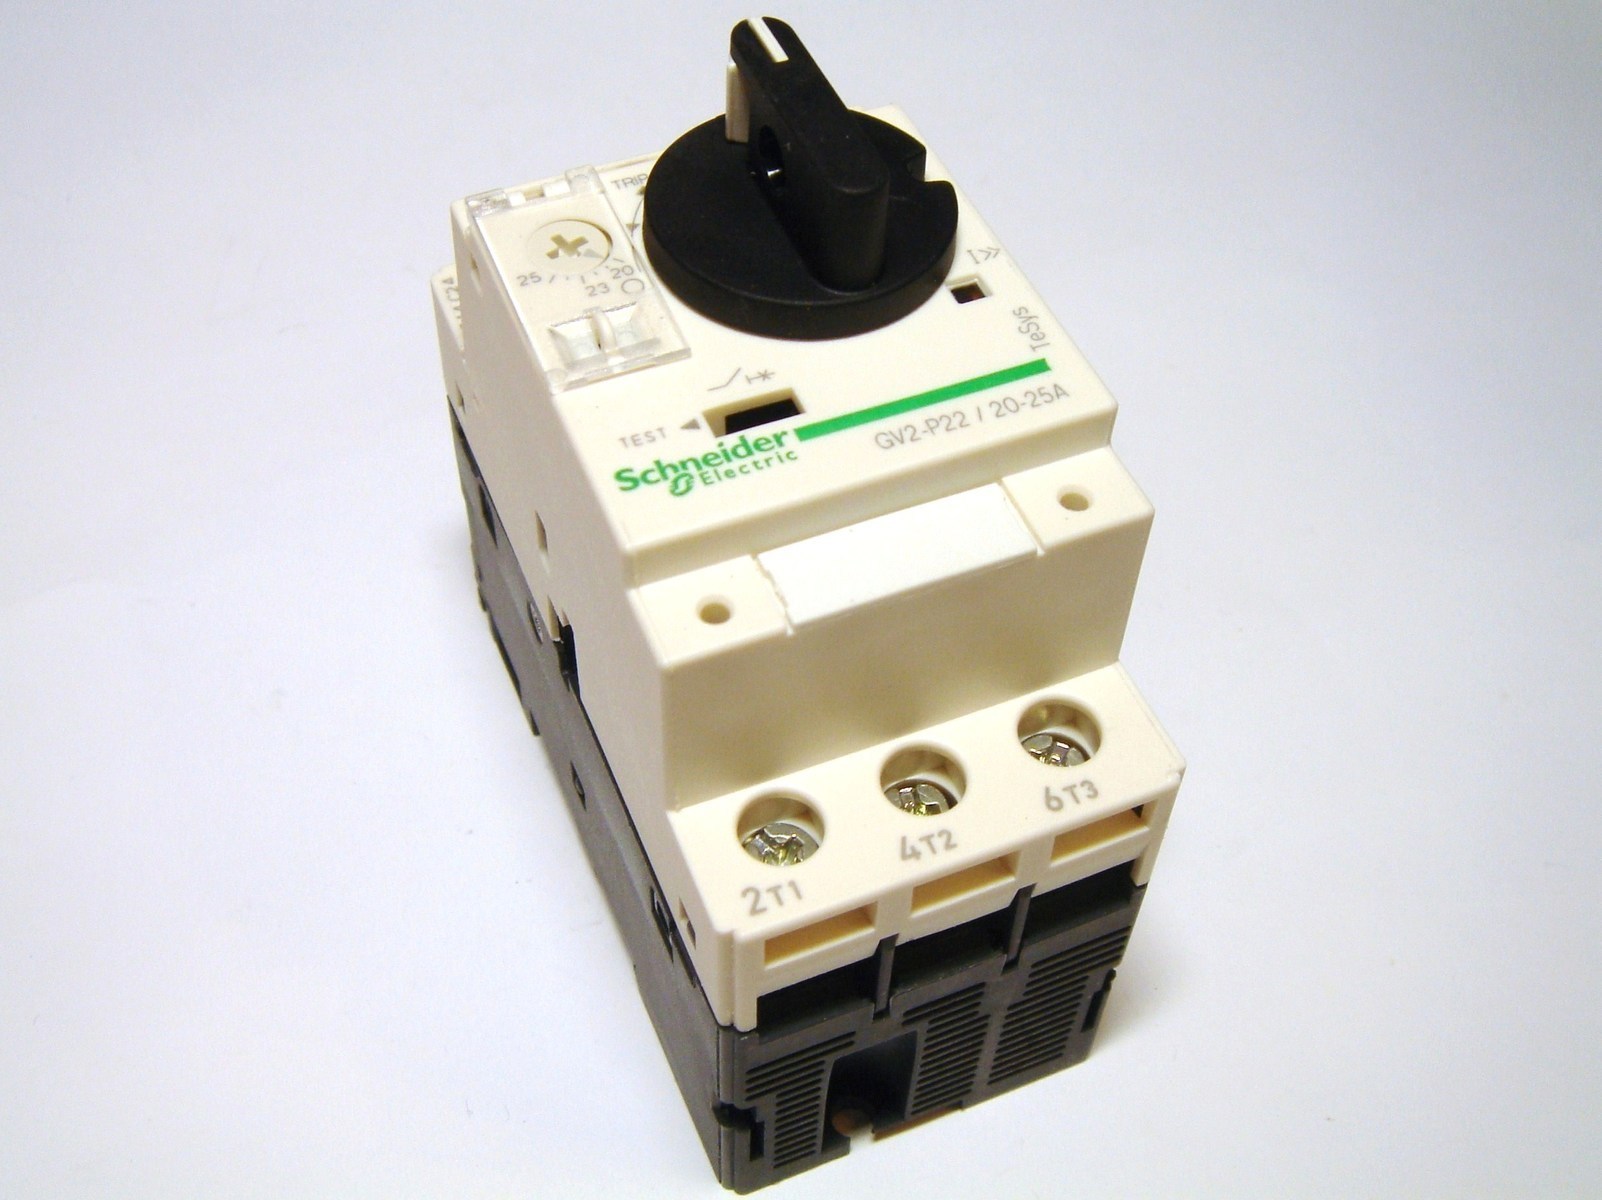 Автоматический выключатель 2 5. Шнайдер gv2. Автоматический выключатель двигателя Schneider Electric 2,5-4a. Выключатель cv2-p (Schneider Electric). Автомат Шнайдер gv3p73.